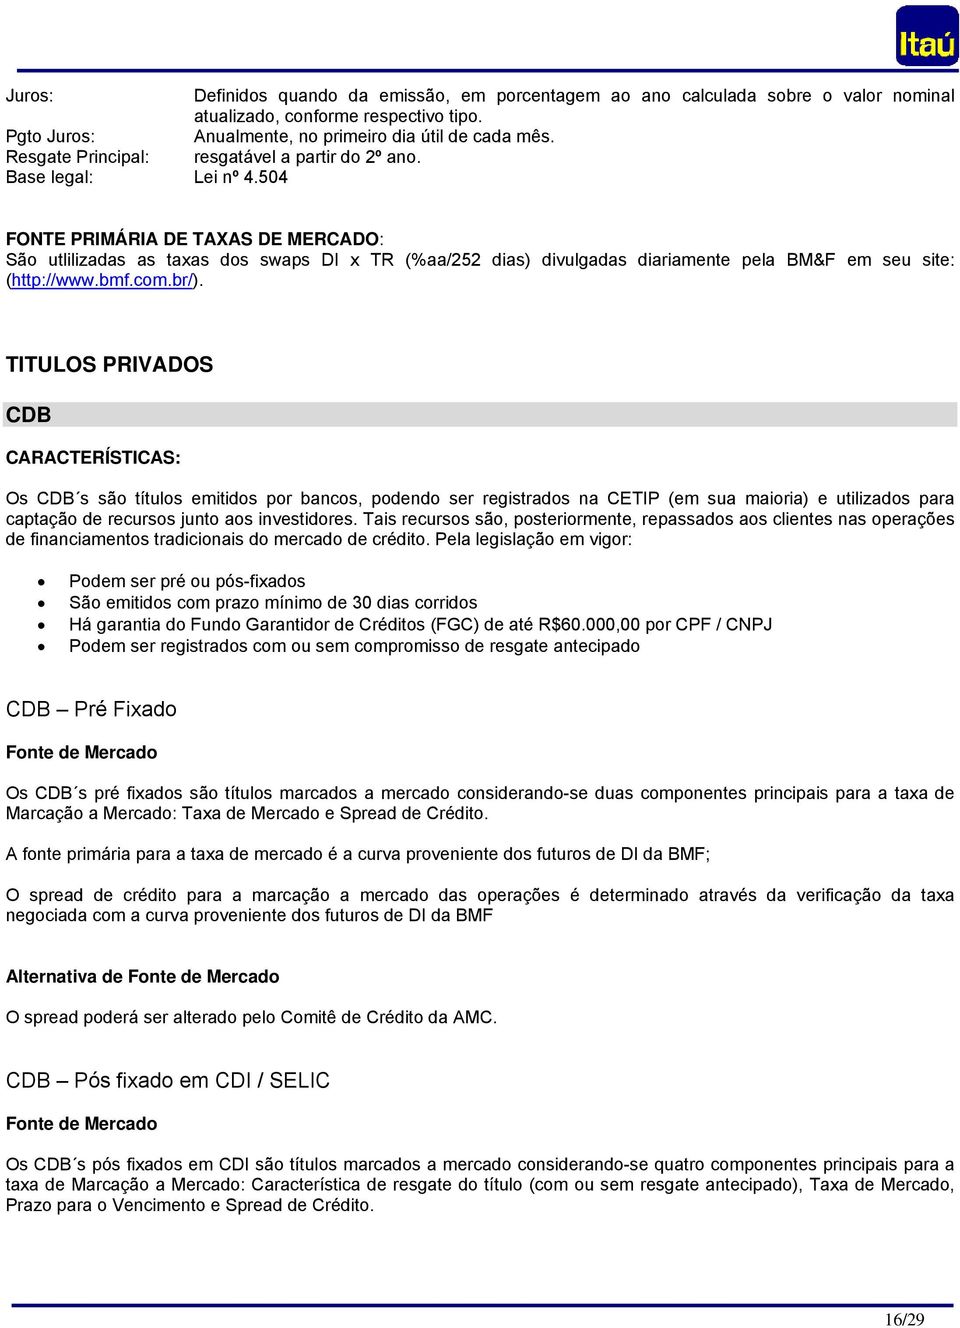 504 FONTE PRIMÁRIA DE TAXAS DE MERCADO: São utlilizadas as taxas dos swaps DI x TR (%aa/252 dias) divulgadas diariamente pela BM&F em seu site: (http://www.bmf.com.br/).